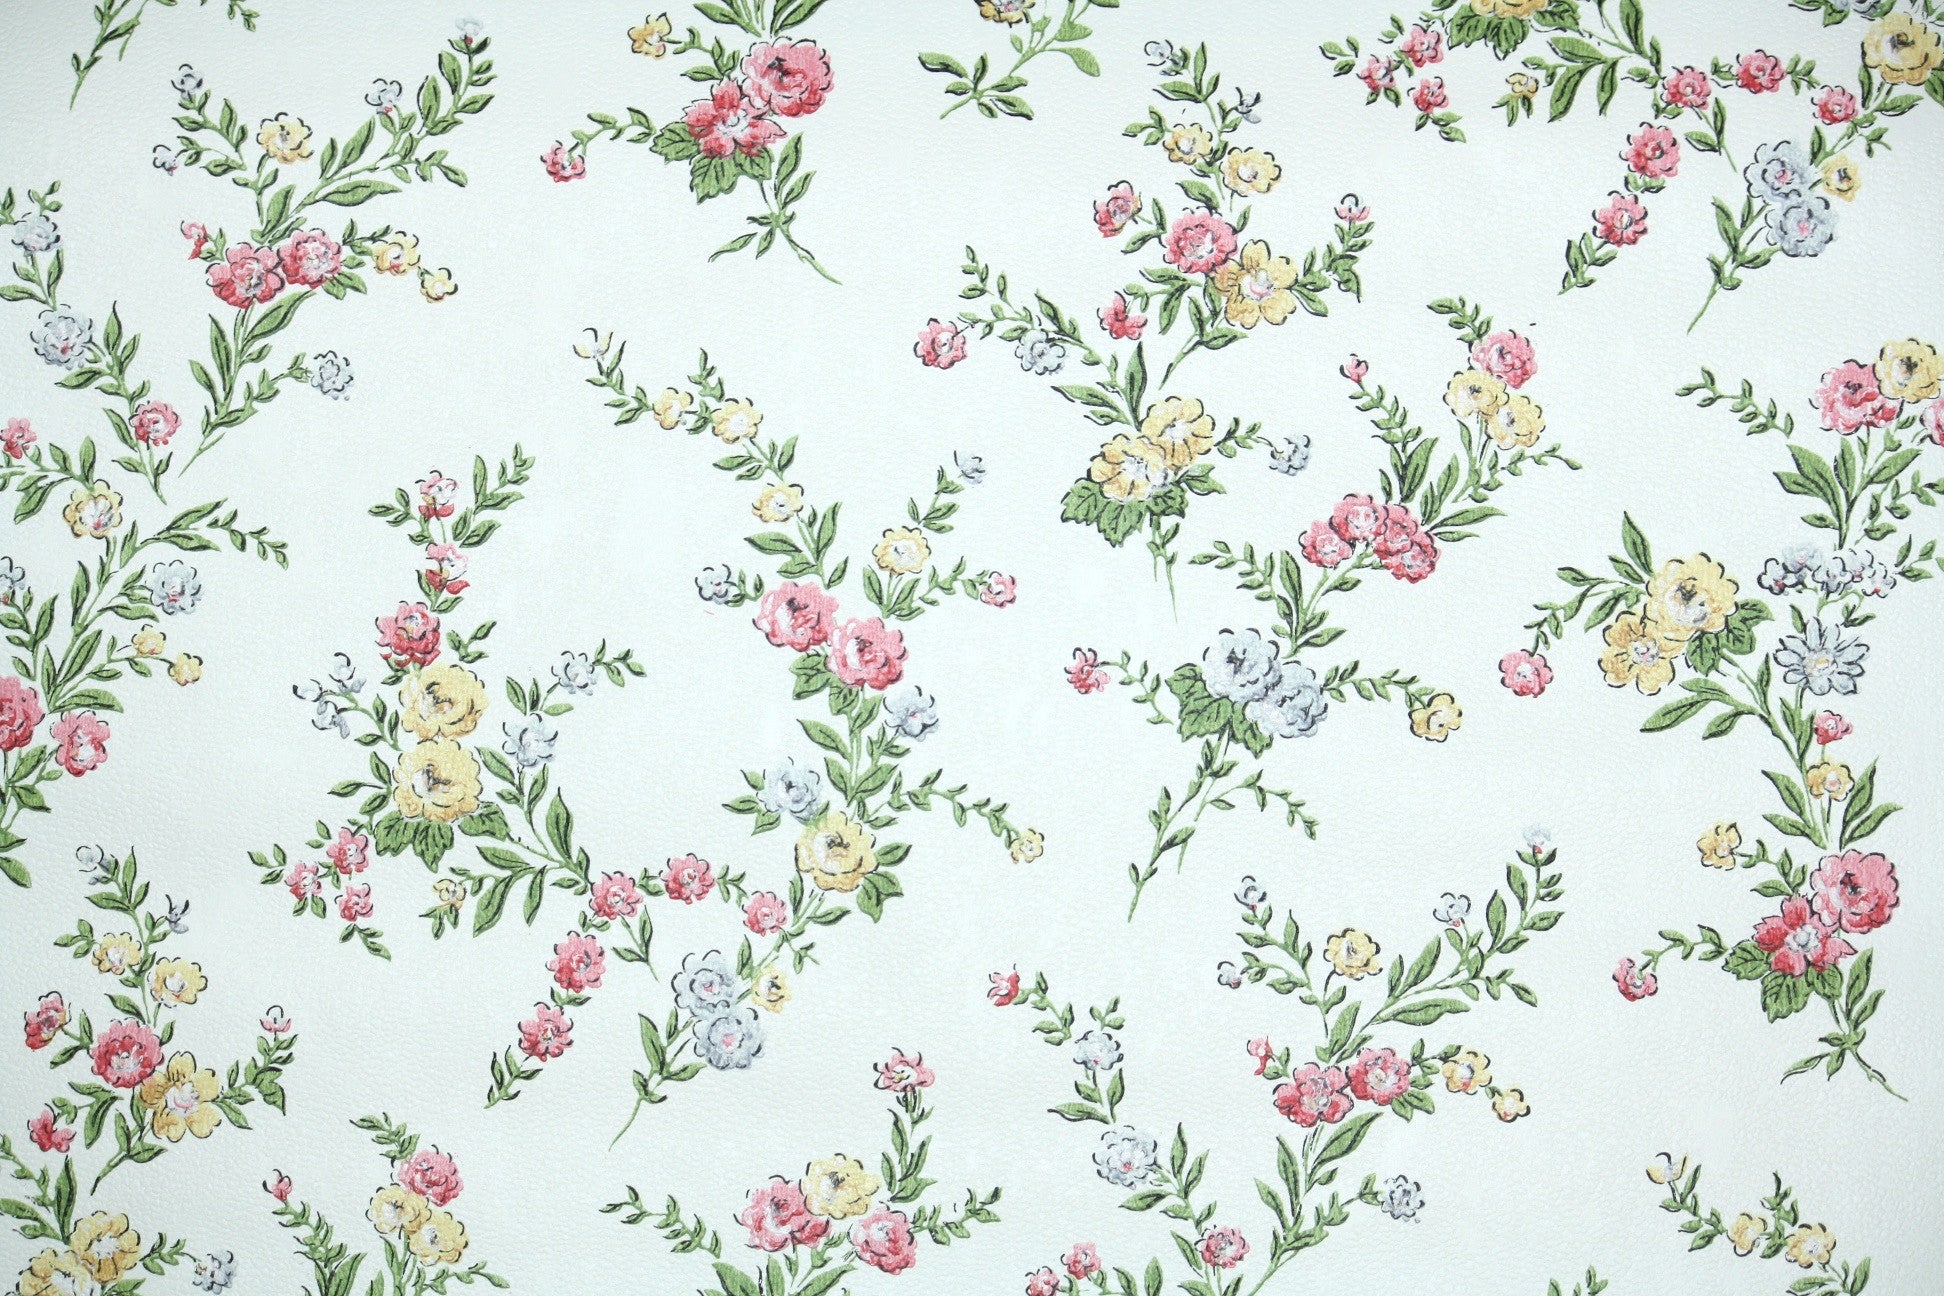 Hãy để Floral vintage wallpaper mang đến cho bạn một chút hoài niệm về những cảm xúc trong quá khứ. Với những hoa văn lãng mạn, bạn sẽ cảm thấy được đưa vào một thế giới đầy màu sắc và đẹp nhất của tuổi trẻ.